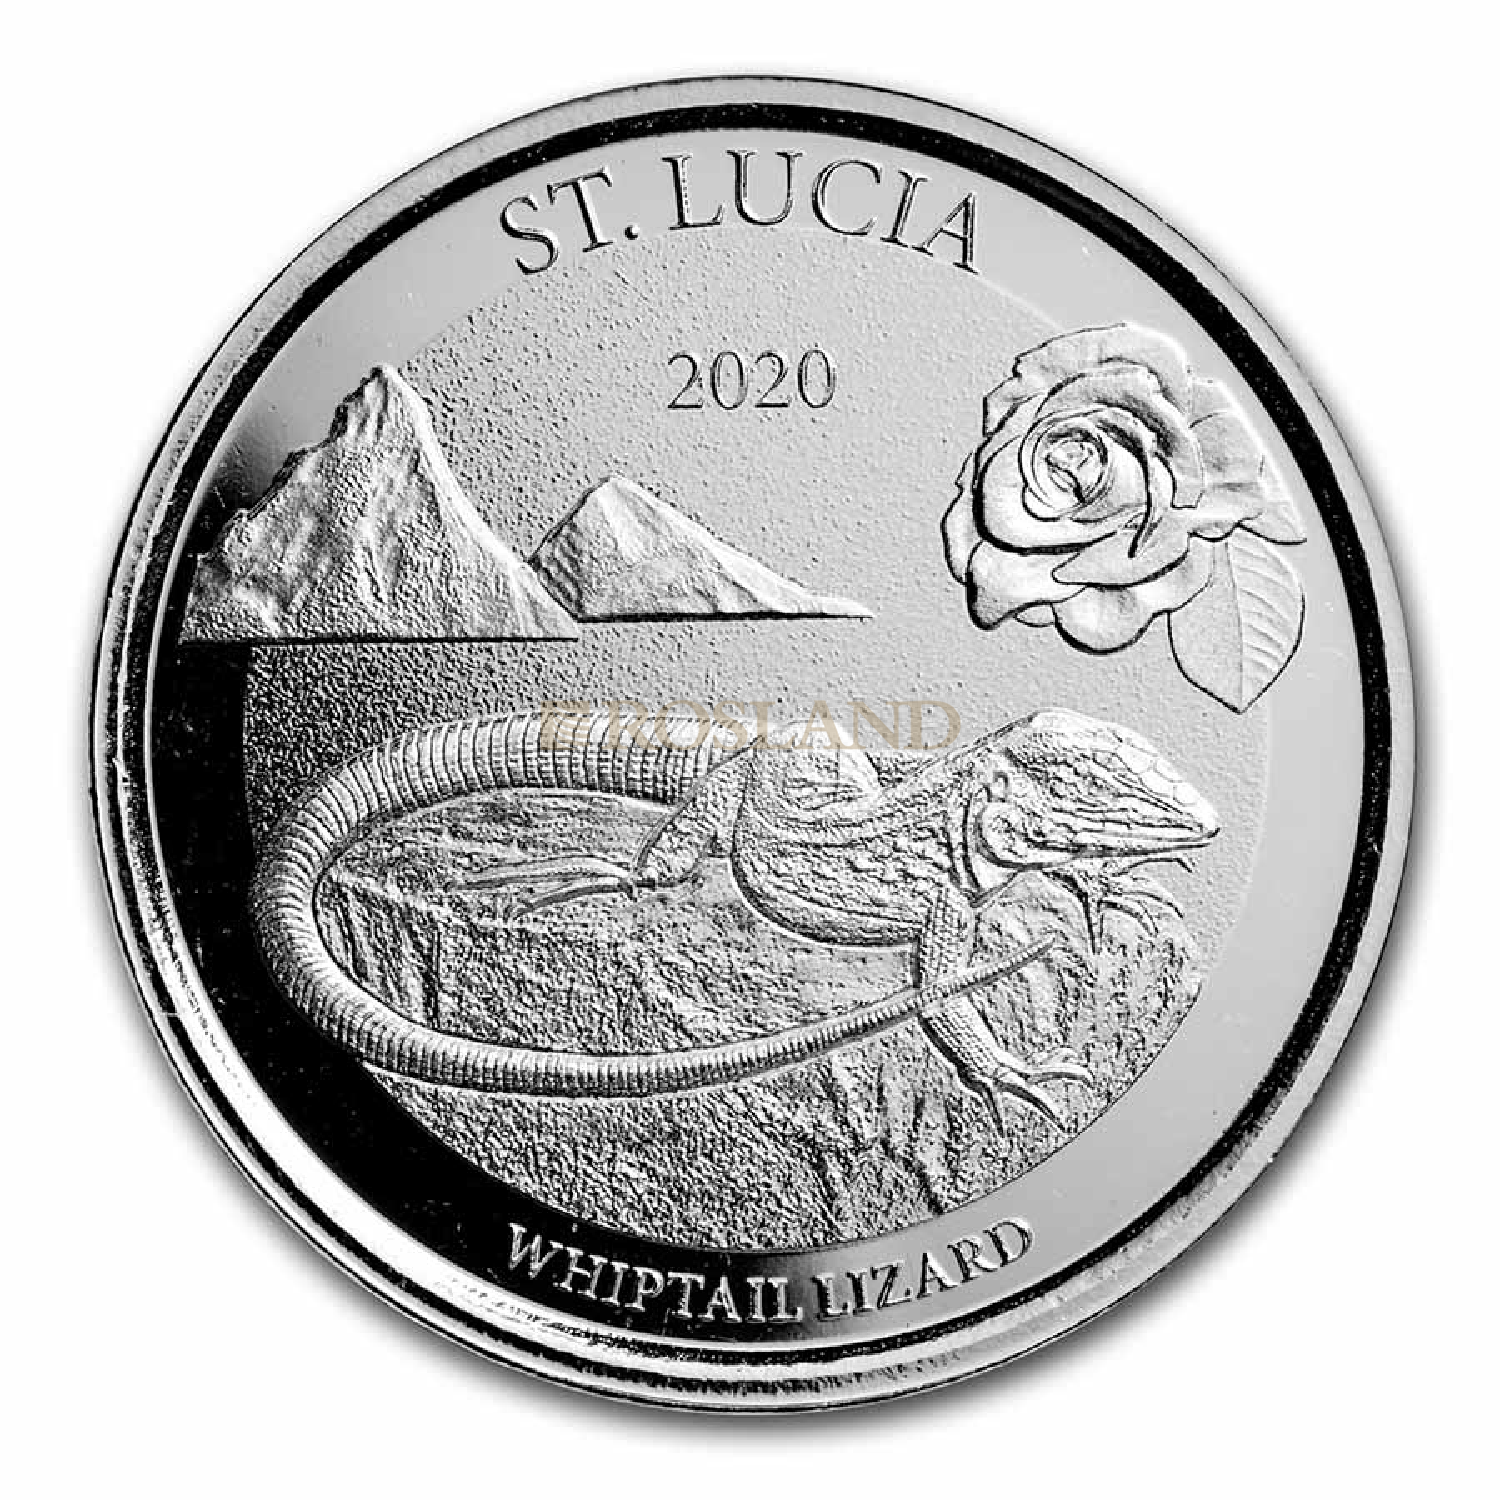 1 Unze Silbermünze EC8 St. Lucia Whiptail Lizard 2020